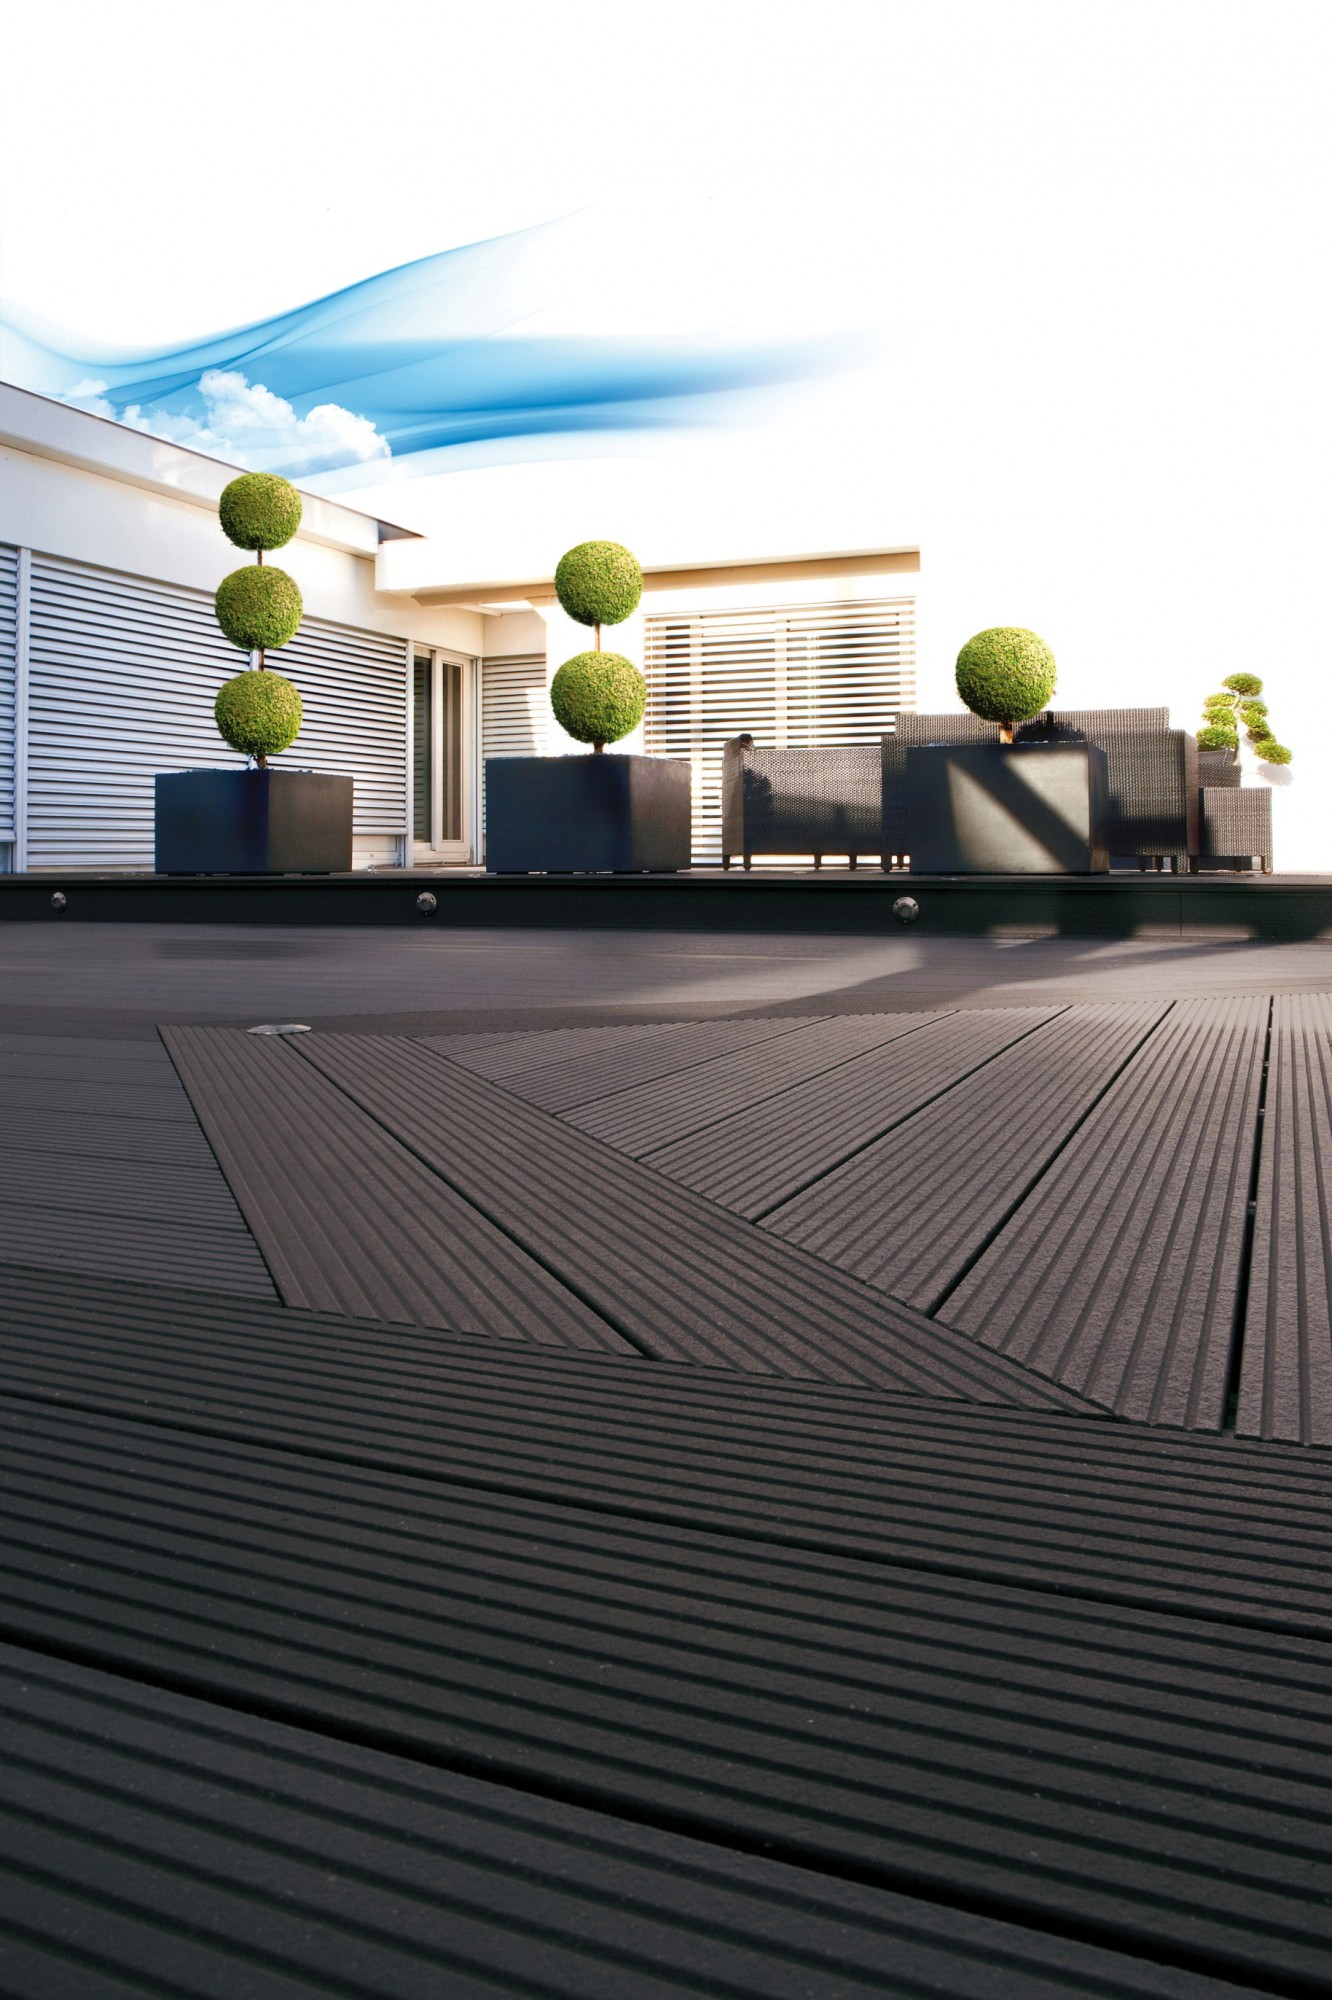 terrasse Composite Deck'O Zen Bangkirai .100%BOIS Mérignac près de Bordeaux Gironde 33 et Bidart près de Bayonne Pyrénées Atlantiques